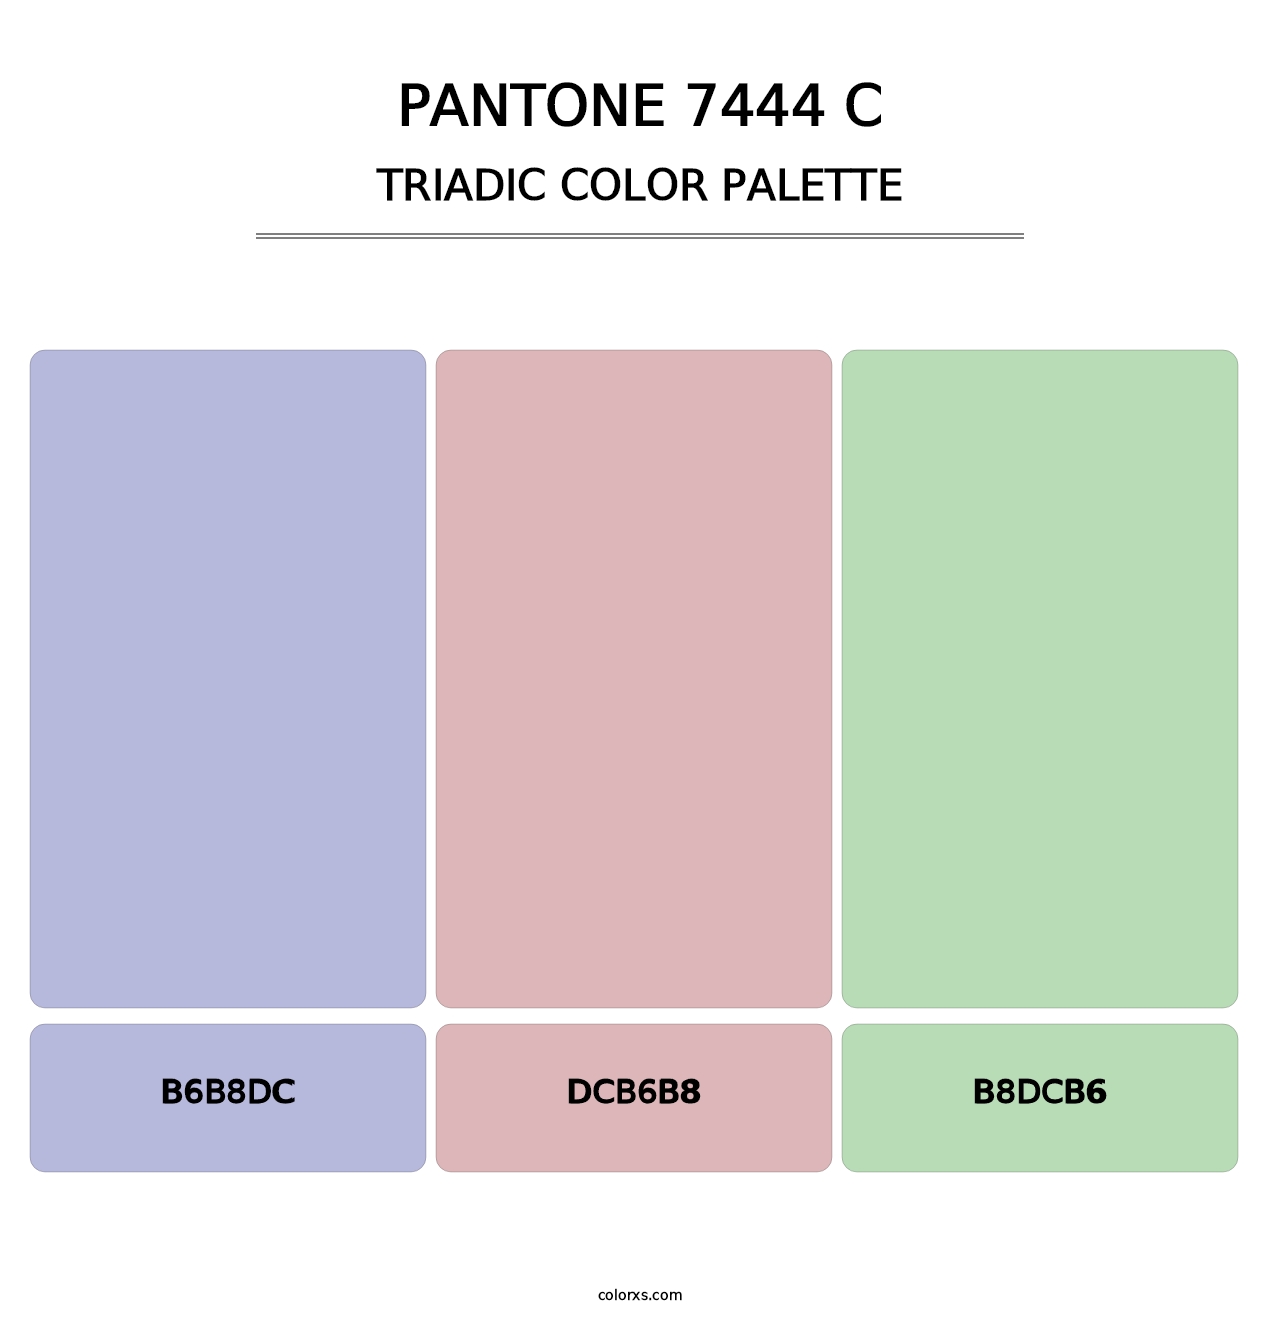 PANTONE 7444 C - Triadic Color Palette